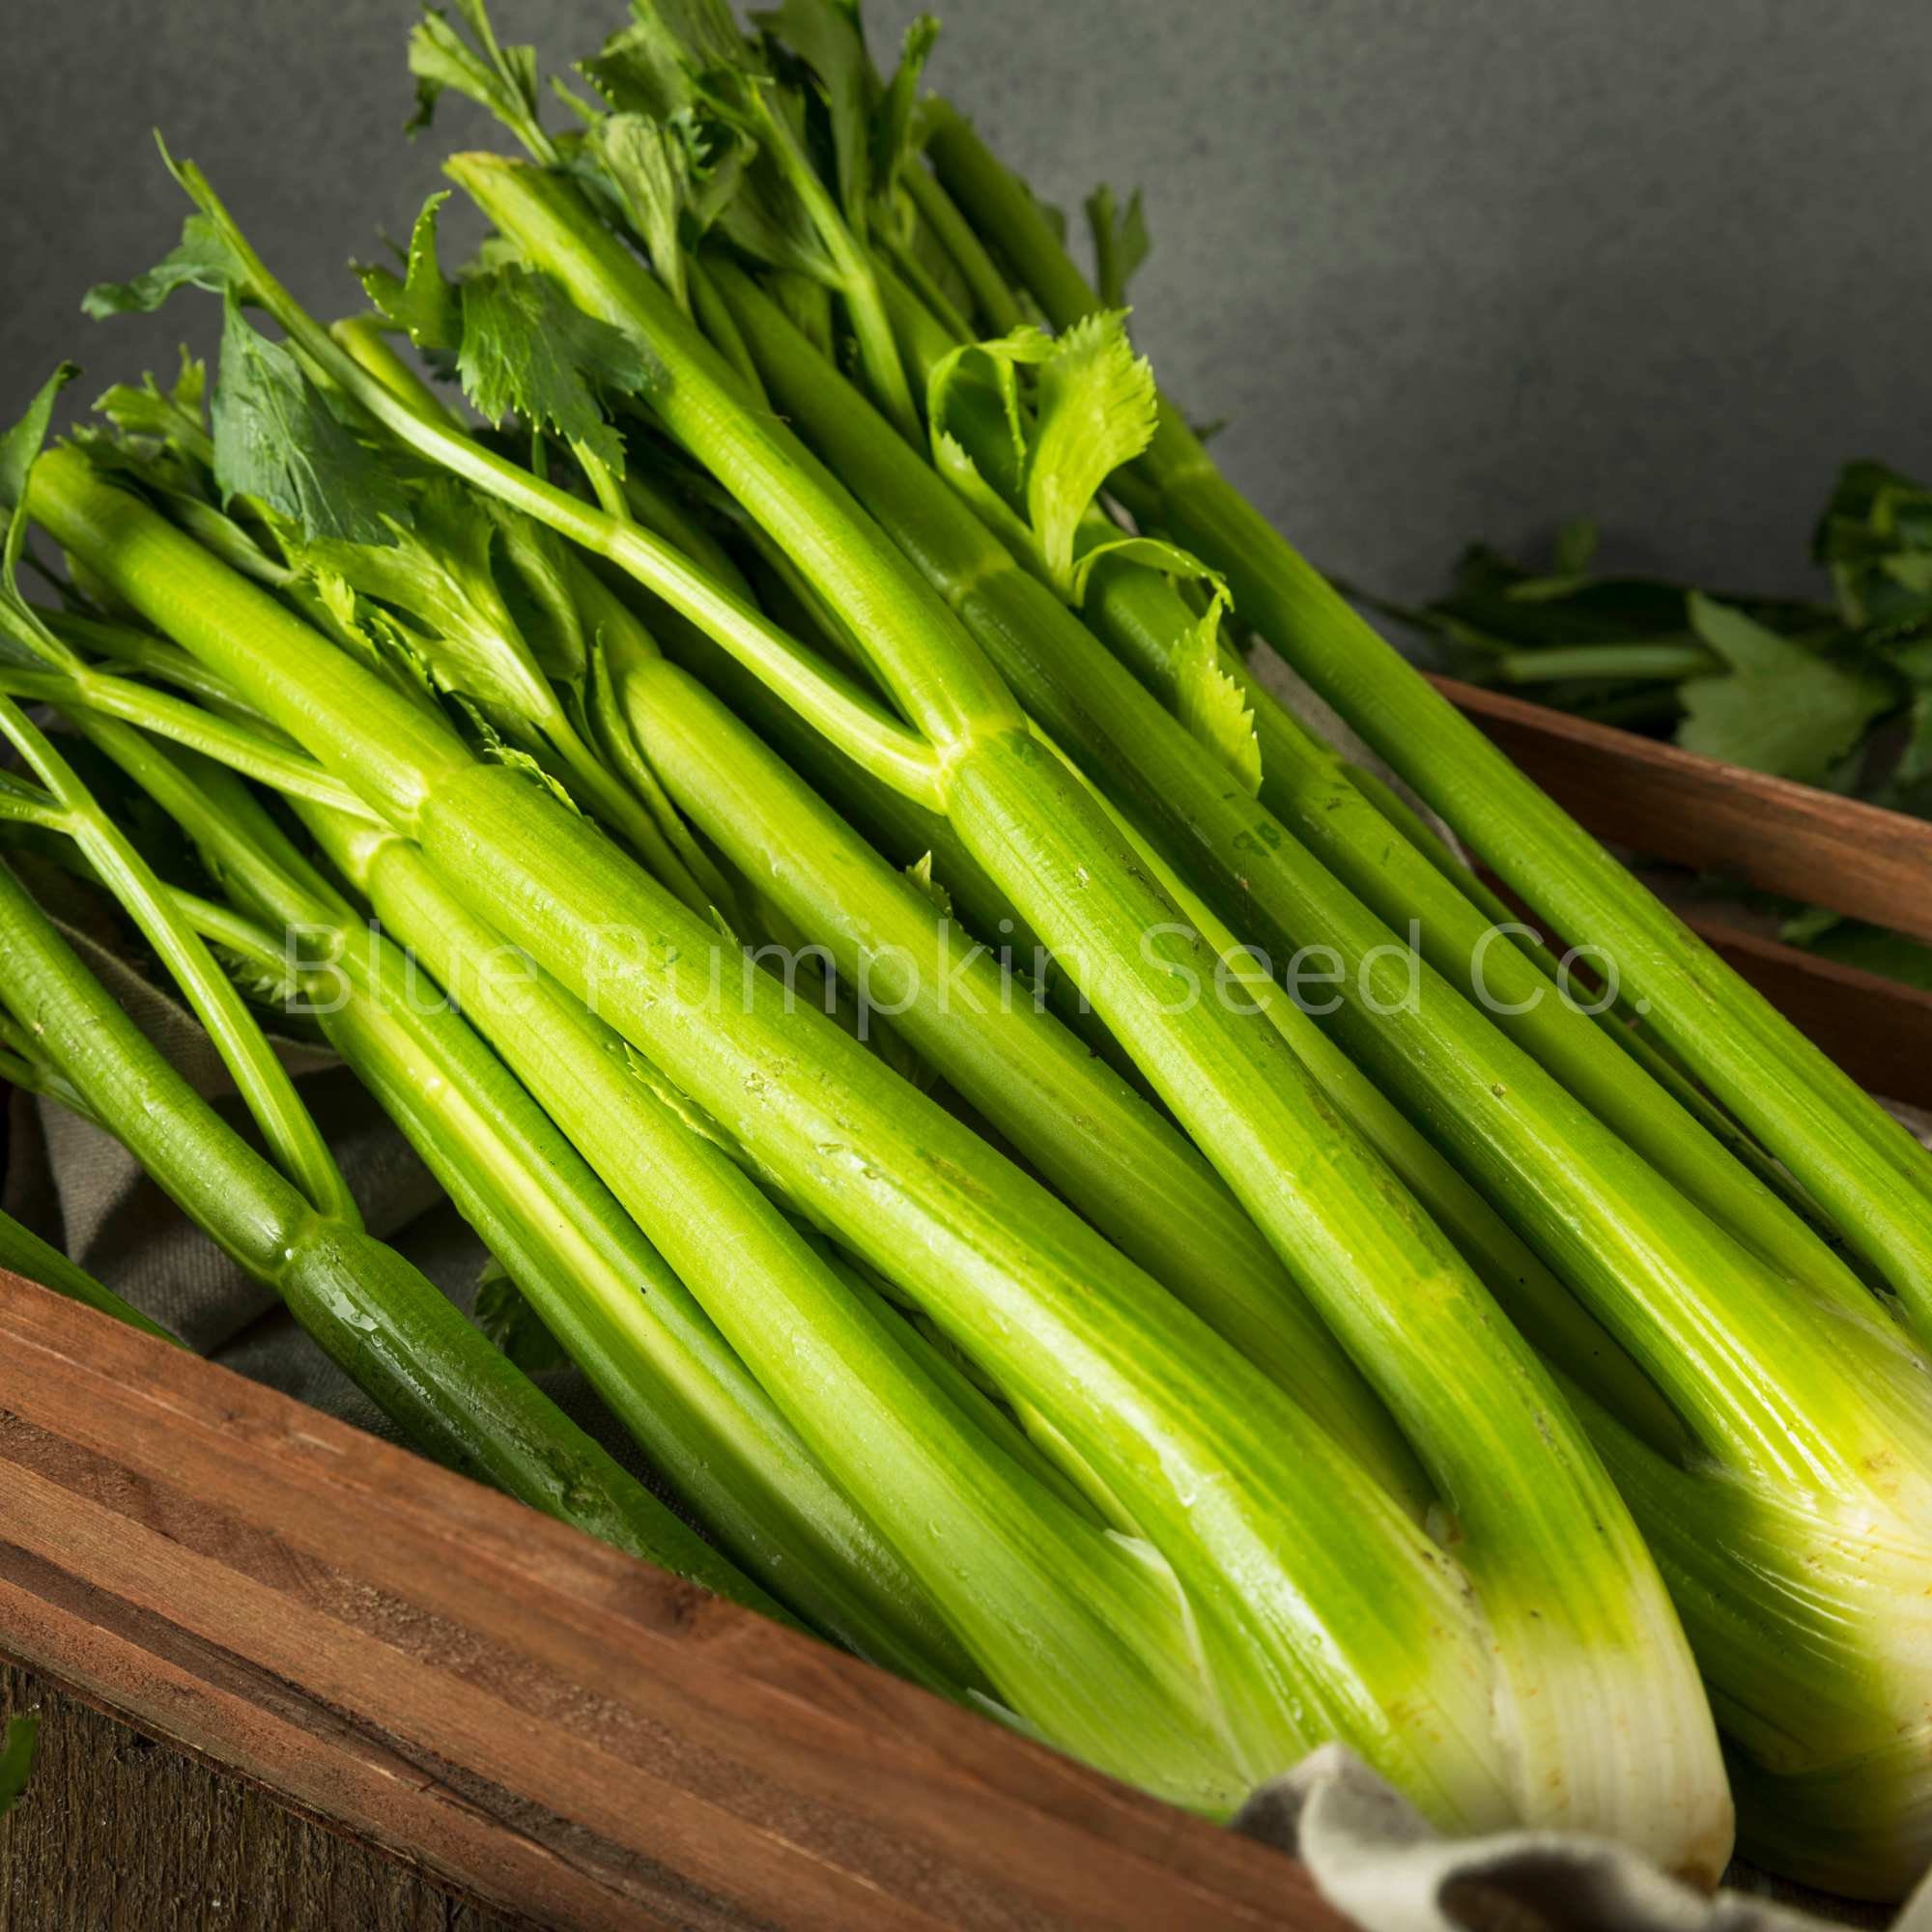 home made celery dildos Porn Pics Hd